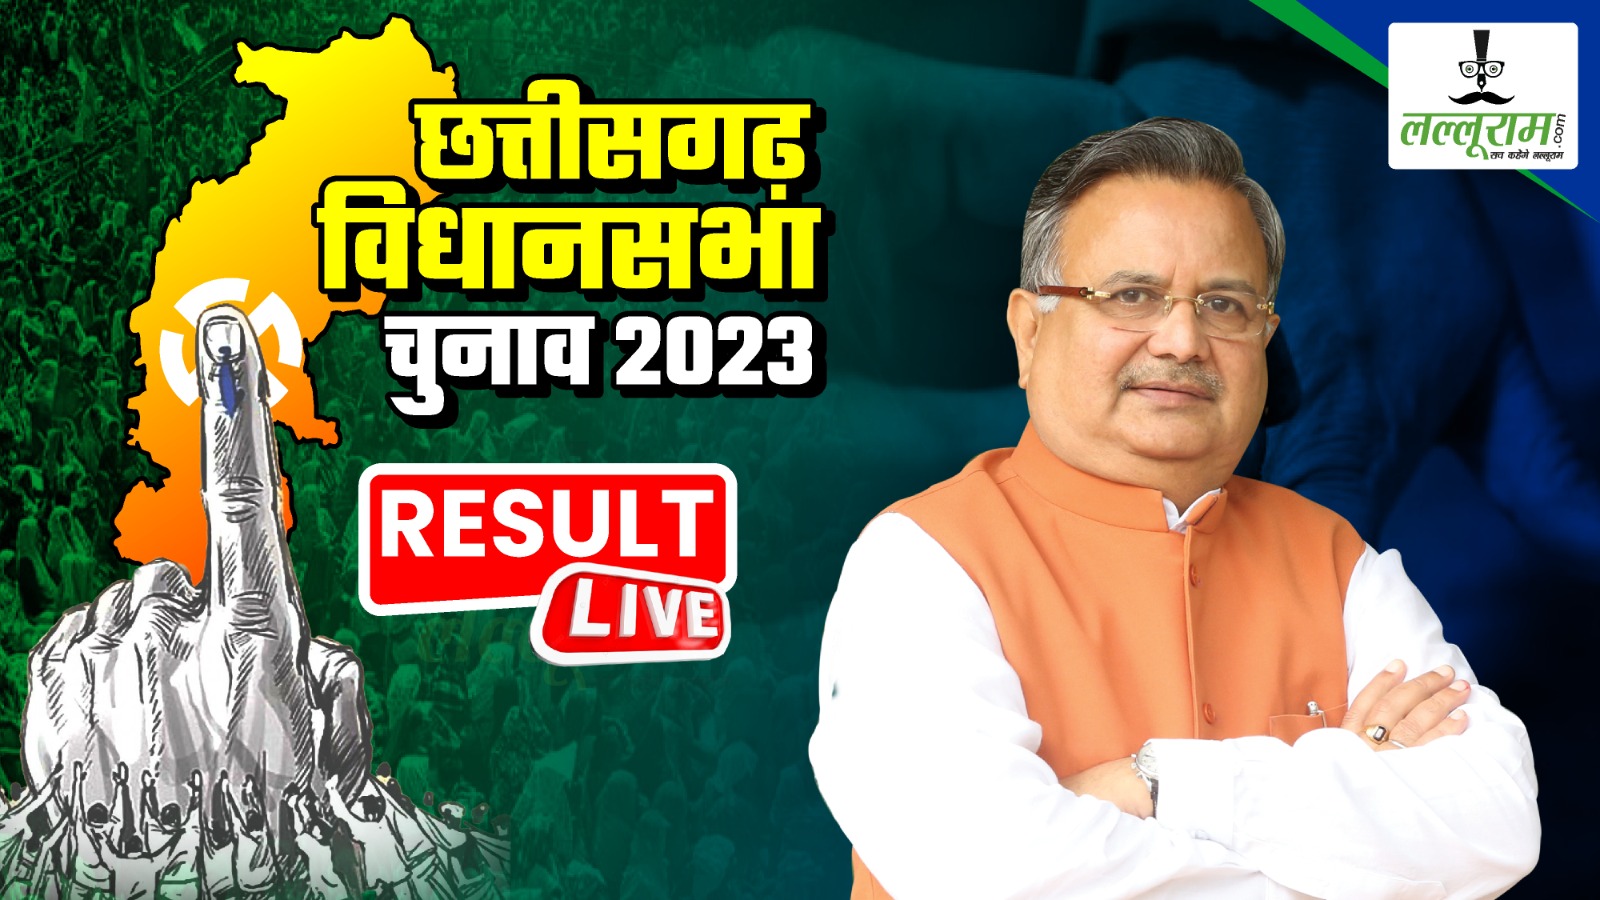 Chhattisgarh election results 2023: रमन सिंह का दावा, कहा- 38 सीटों पर सिमट जाएगी कांग्रेस, राज्य में बन रही डबल इंजन की सरकार…